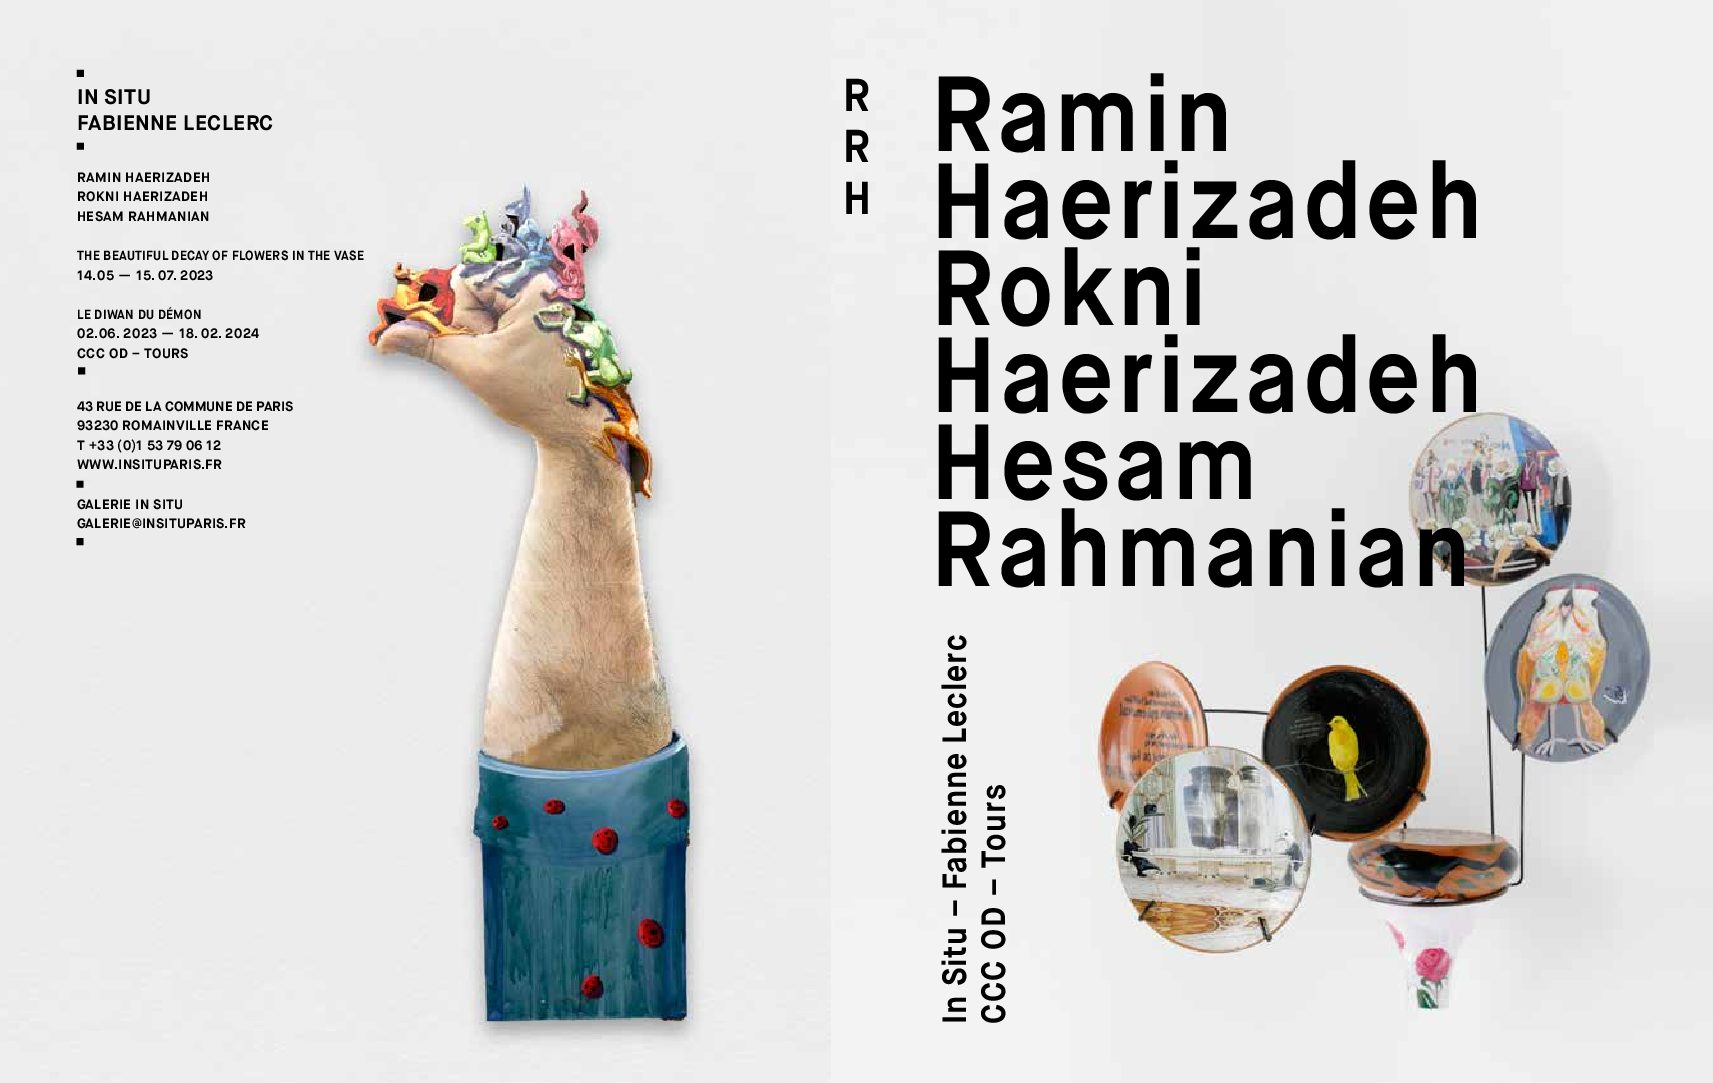 « Ramin Haerizadeh, Rokni Haerizadeh, Hesam Rahmanian, Portrait de groupe en costume, ou l’art de la décomposition »